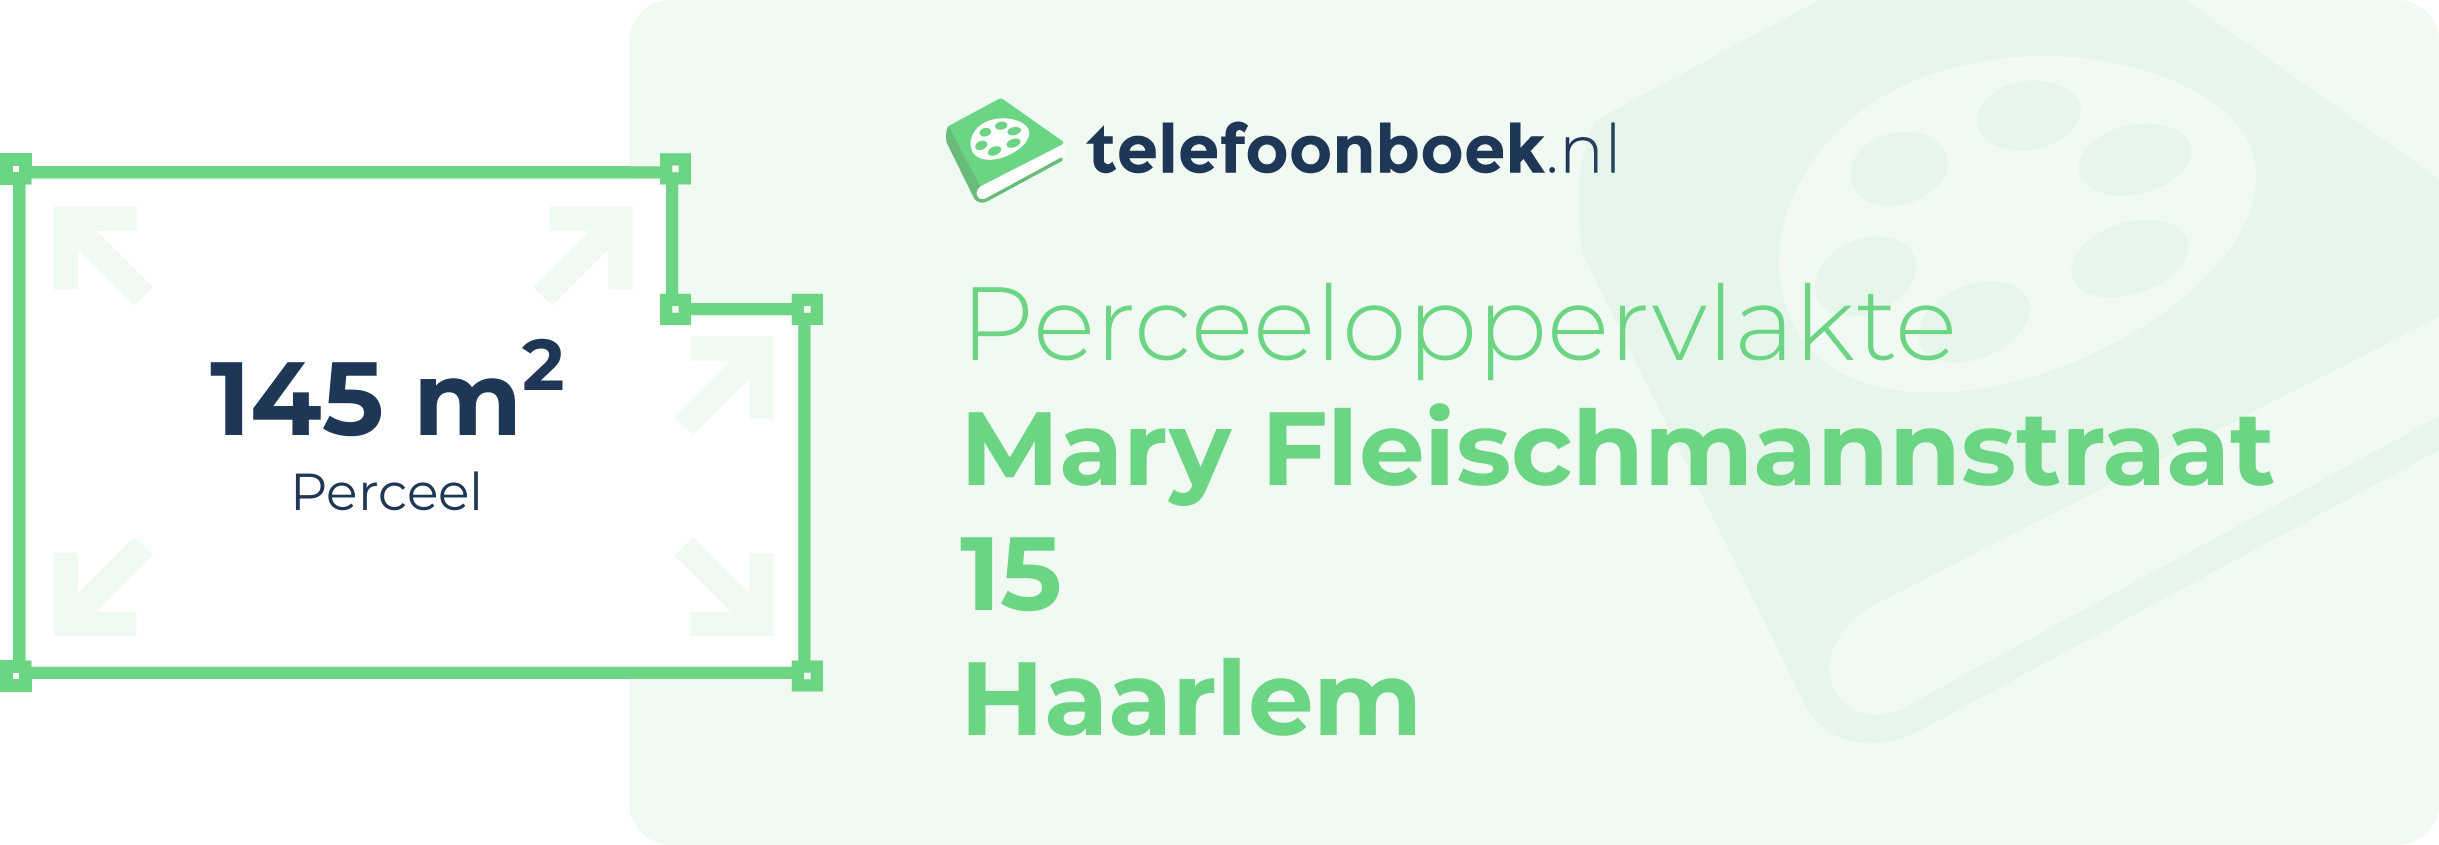 Perceeloppervlakte Mary Fleischmannstraat 15 Haarlem